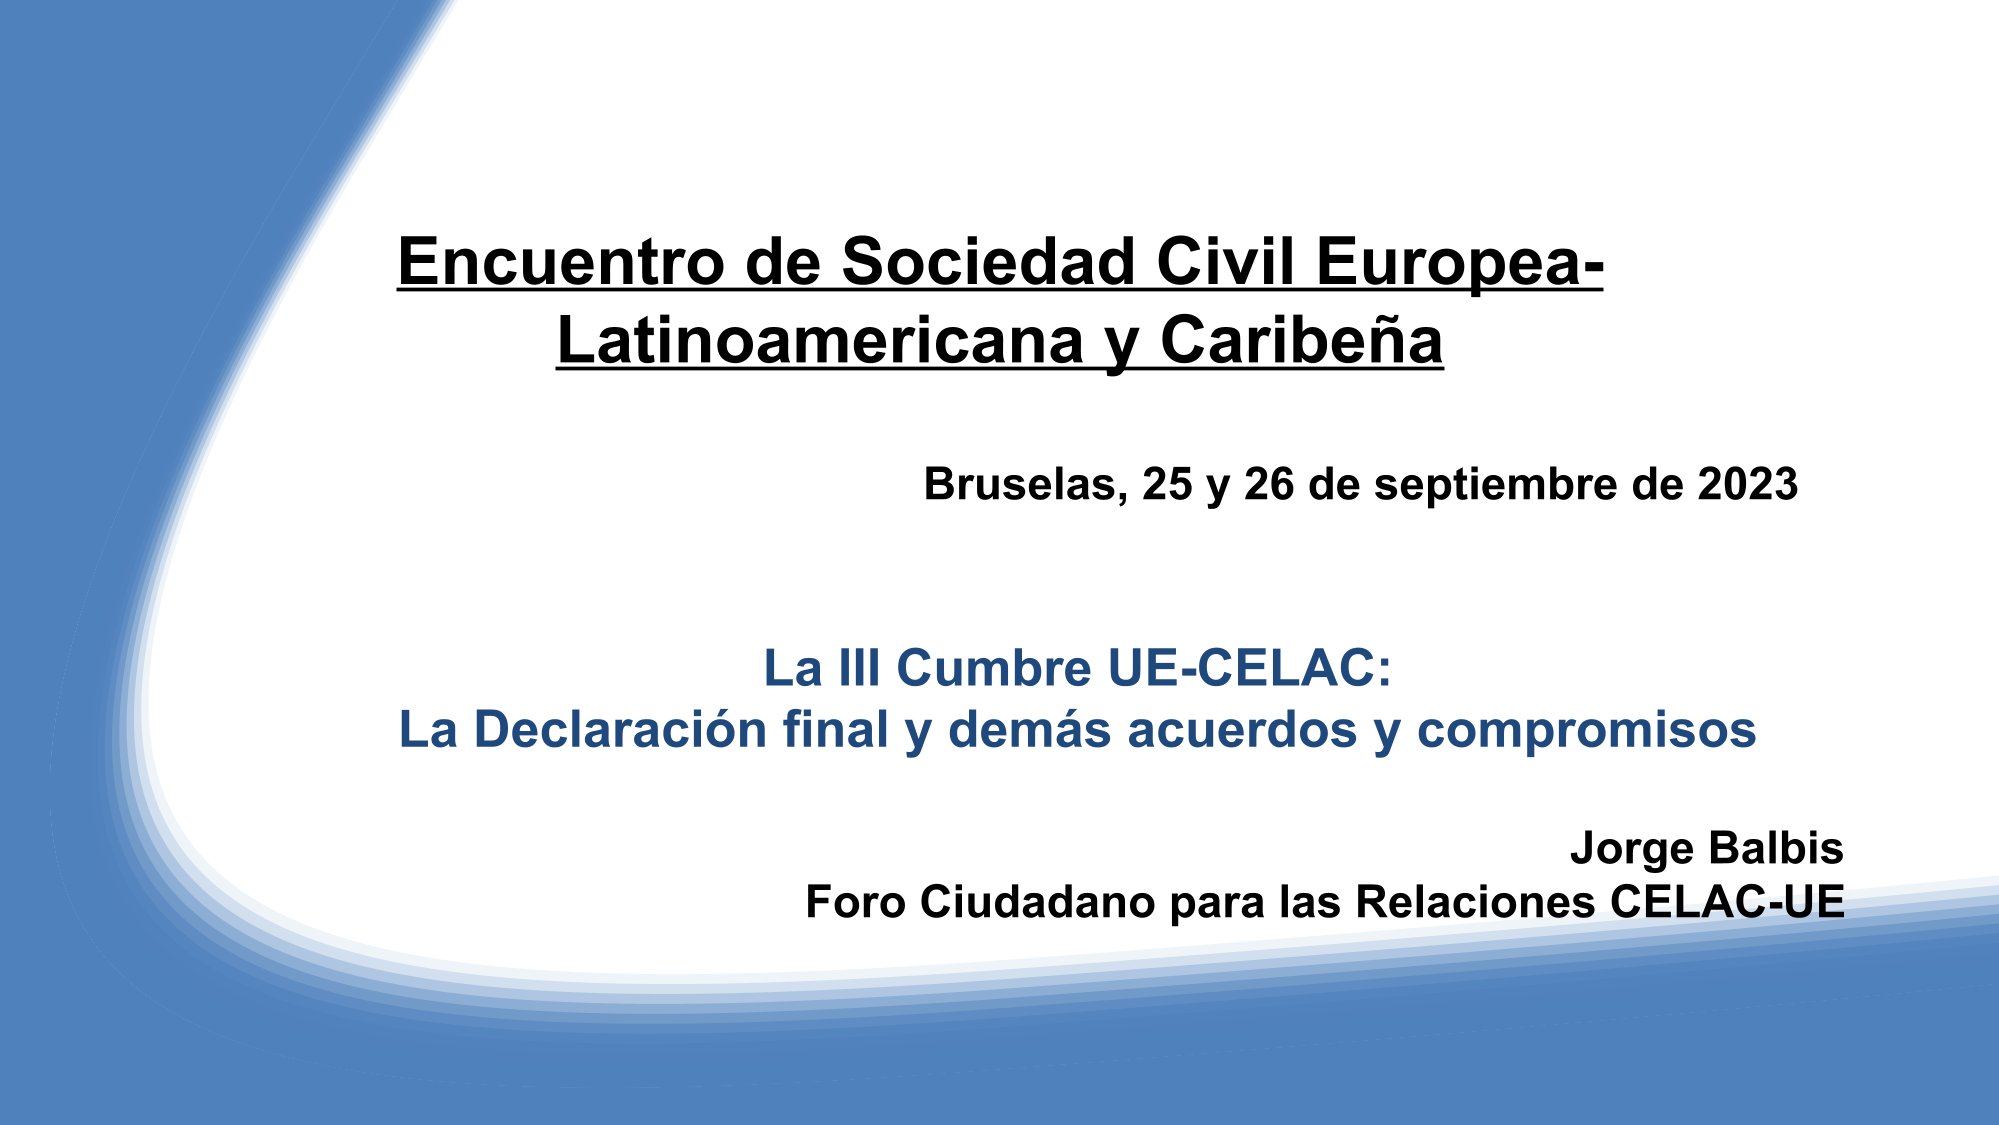 Encuentro de Sociedad Civil UE-ALC, Bruselas, 25 y 26 septiembre 2023 – Presentación Foro Ciudadano